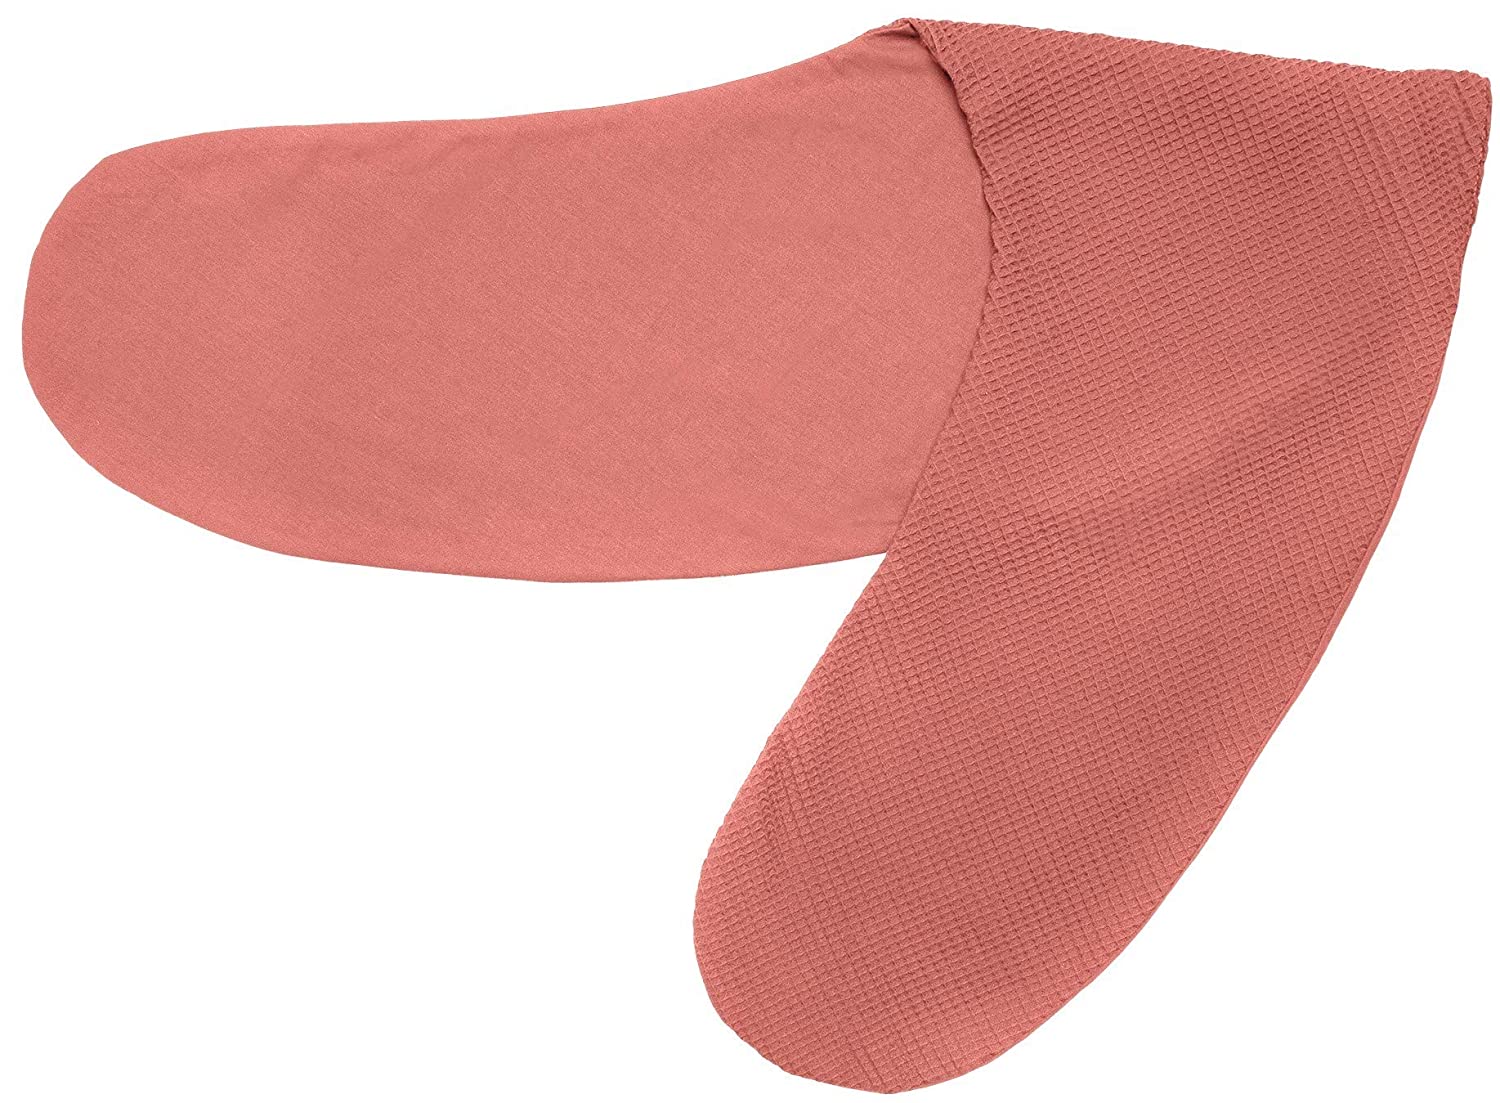 Ideenreich Ideenreich 2465 Nursing Pillow Cover 190 cm Salmon Pink